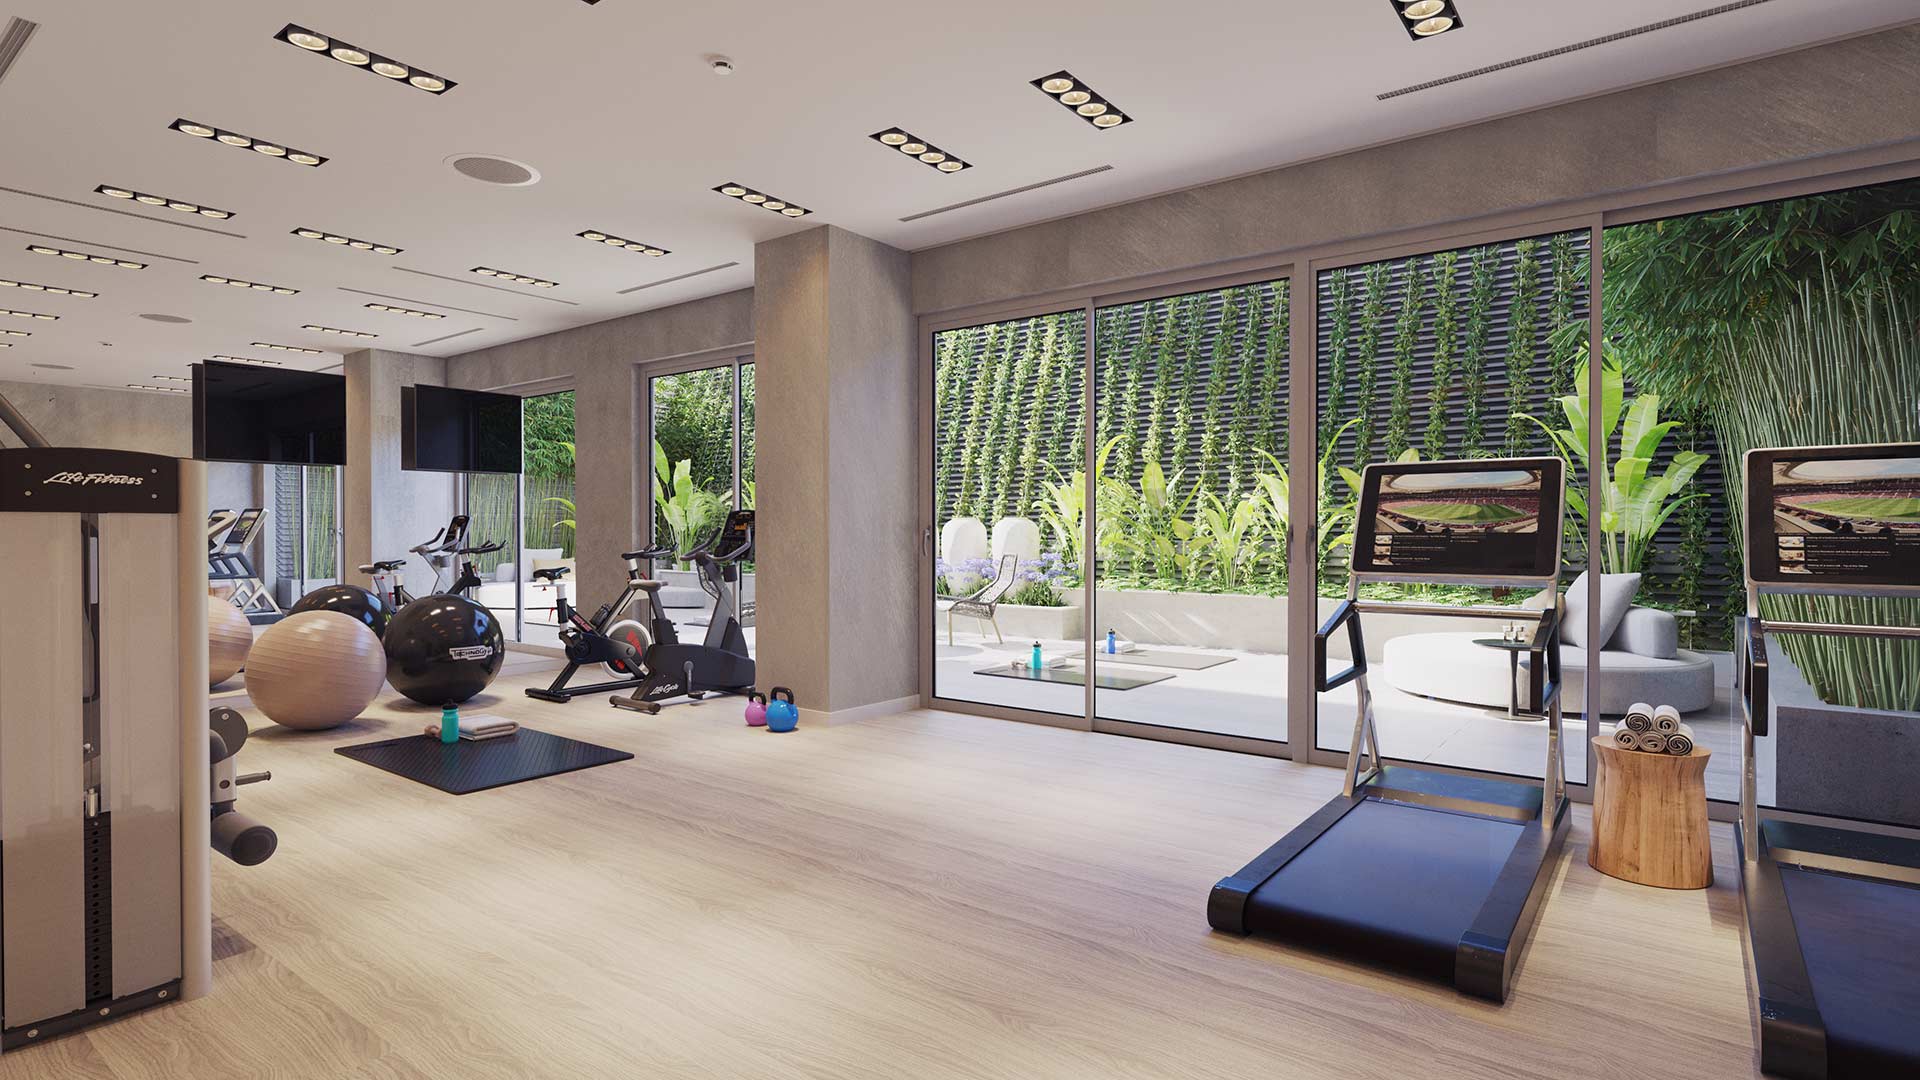 22-Gym-indoor